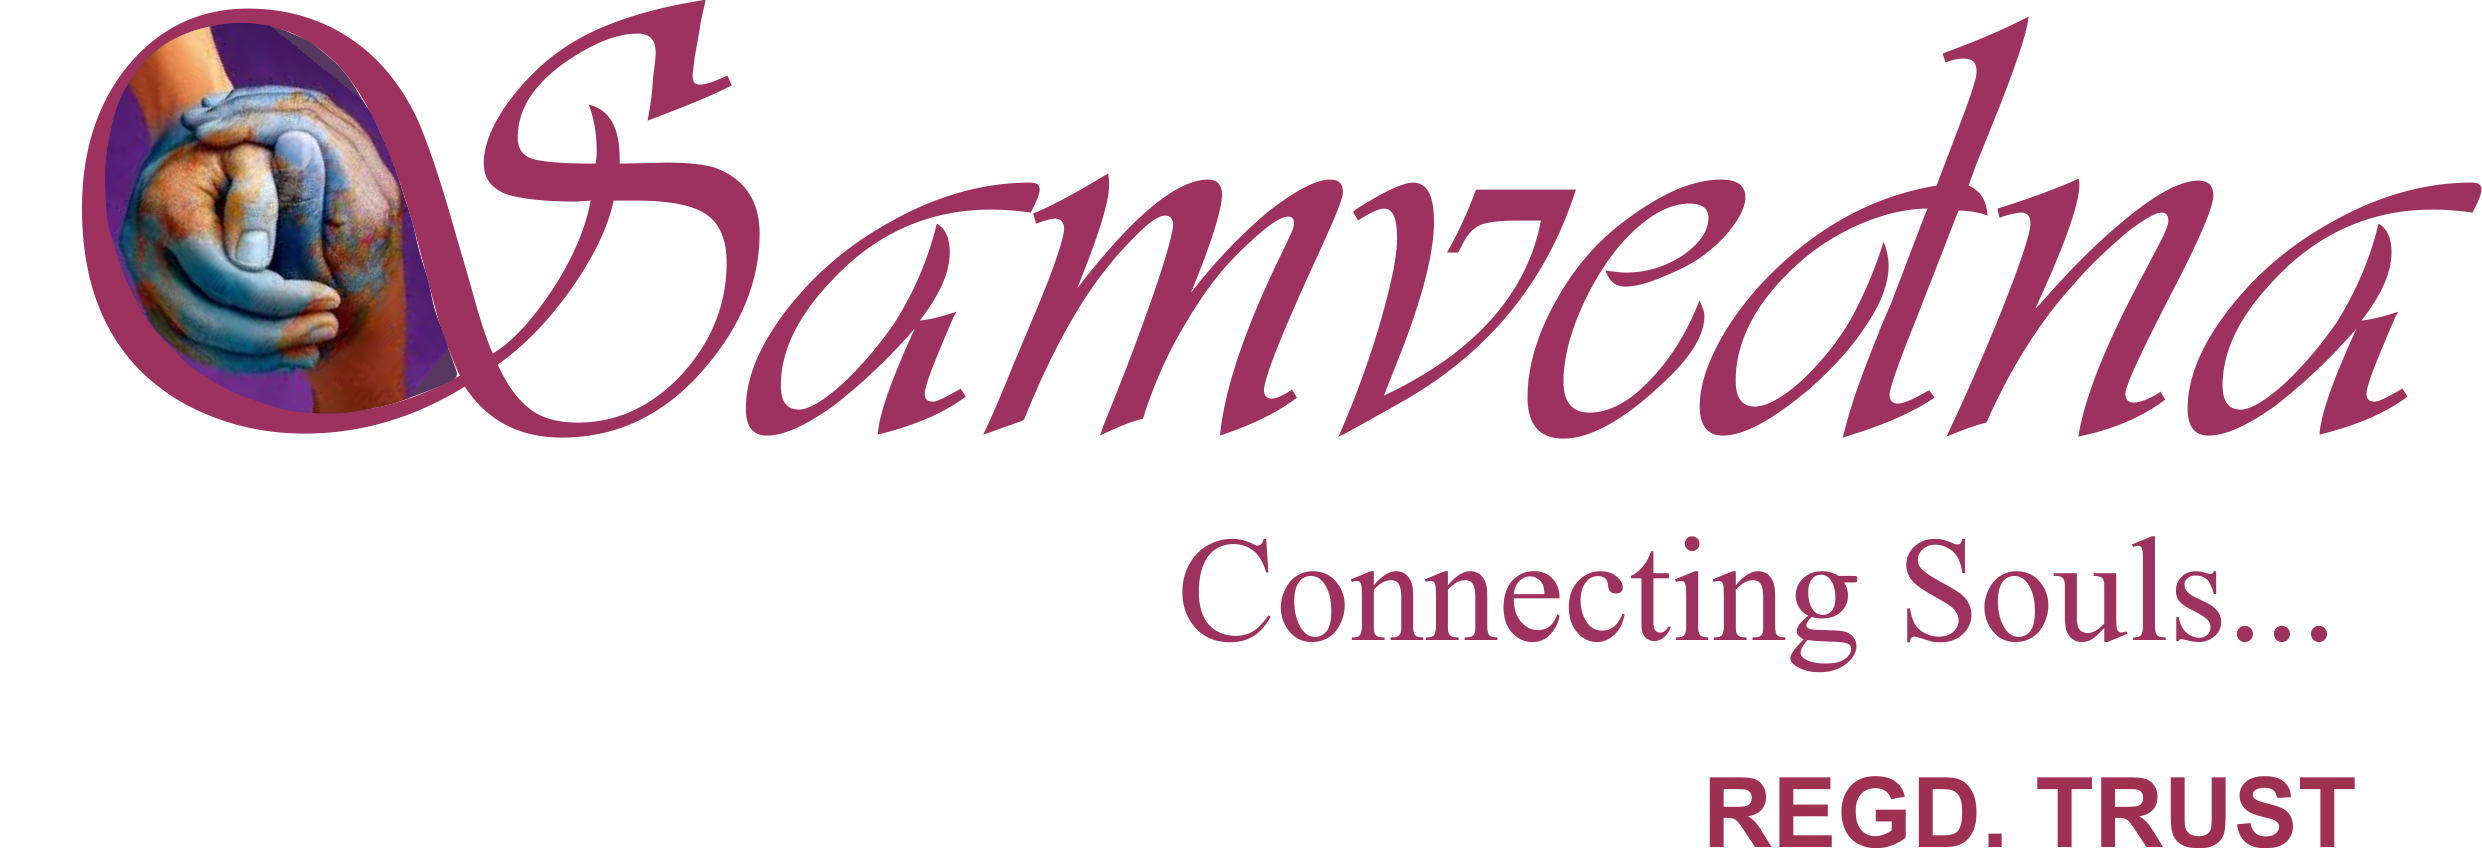 Samvedna Connecting Souls logo